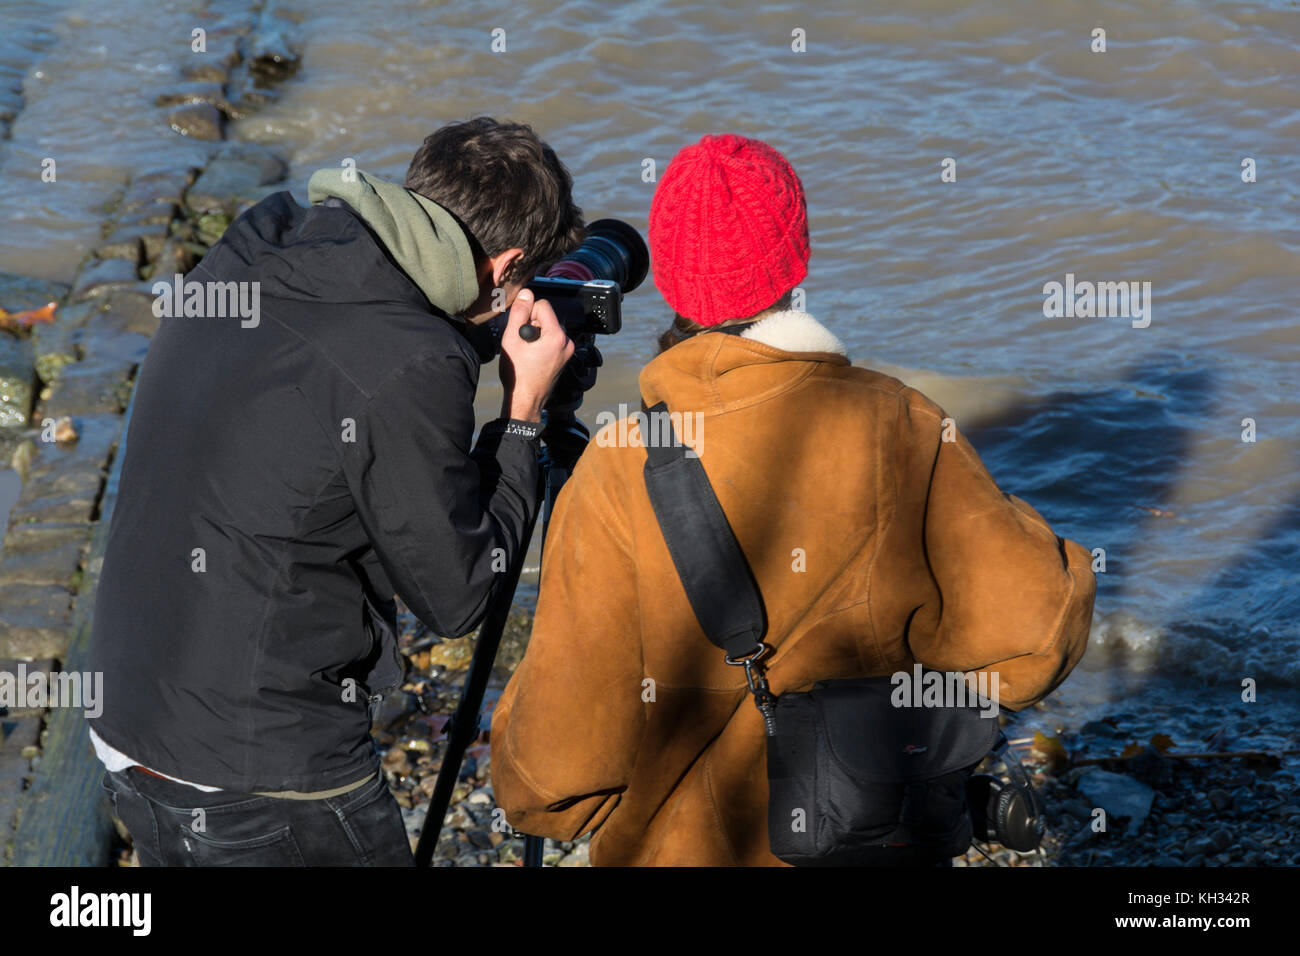 Zwei junge Fotografen in lebhaftes Gespräch auf der Themse Vorland, London, UK. Stockfoto